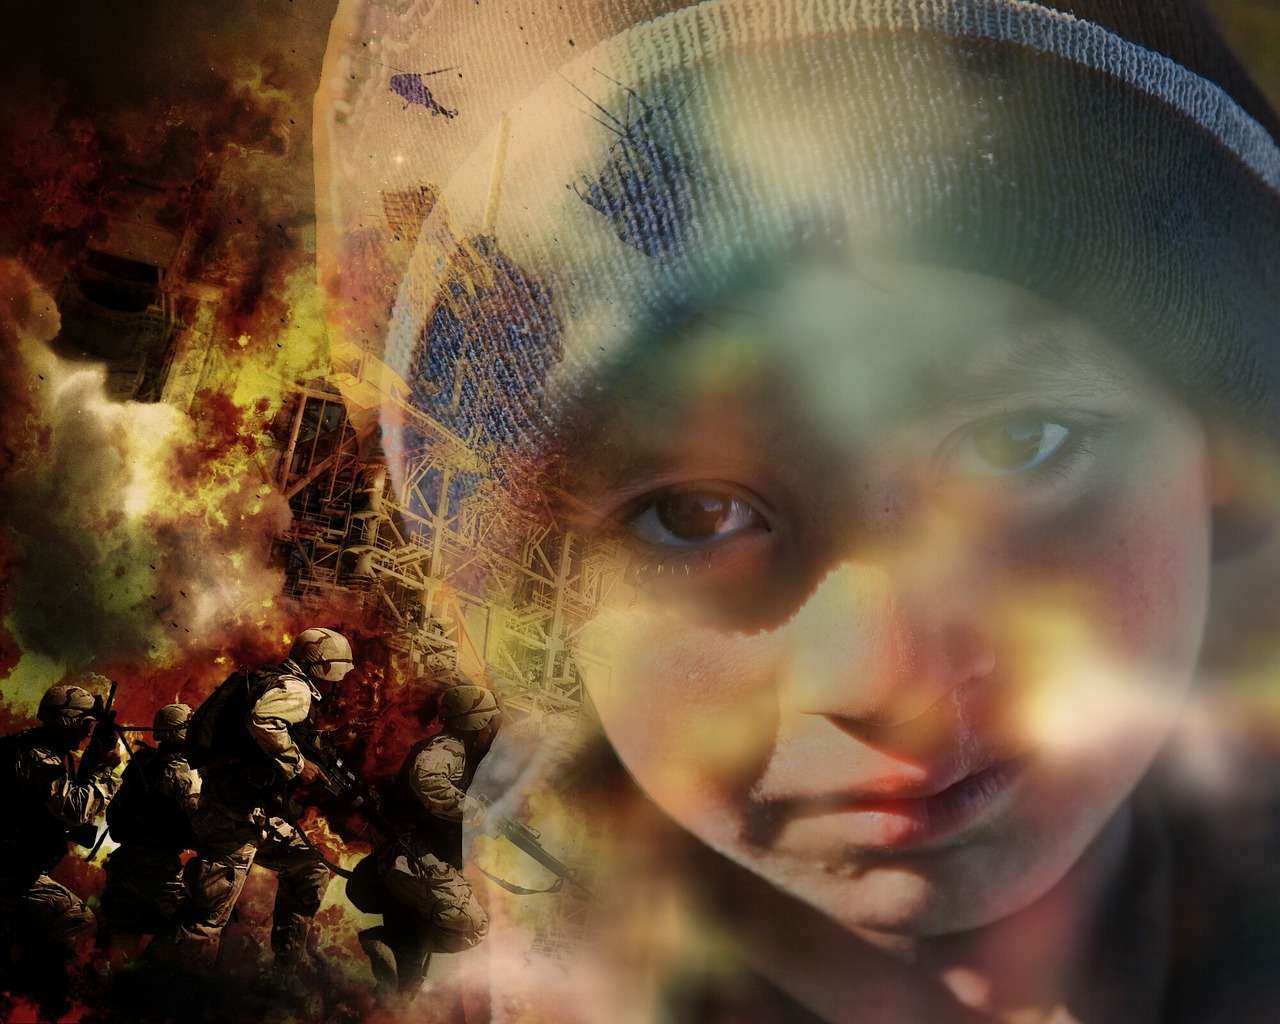 Συρία: 5 εκατομμύρια παιδιά έχουν εκτοπιστεί